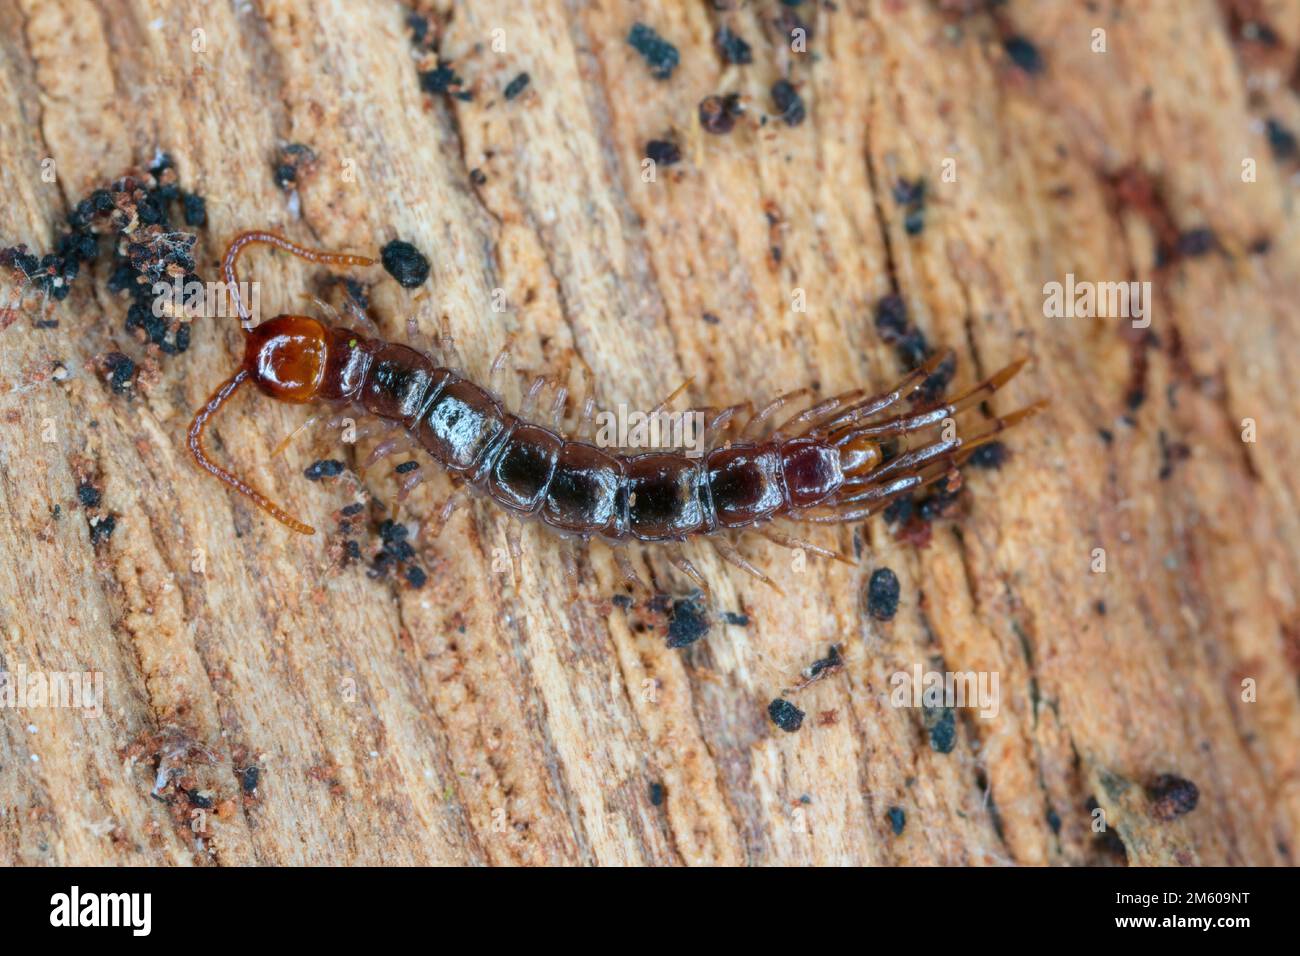 Centipede, Lithobiidae on wood, macro photo Stock Photo